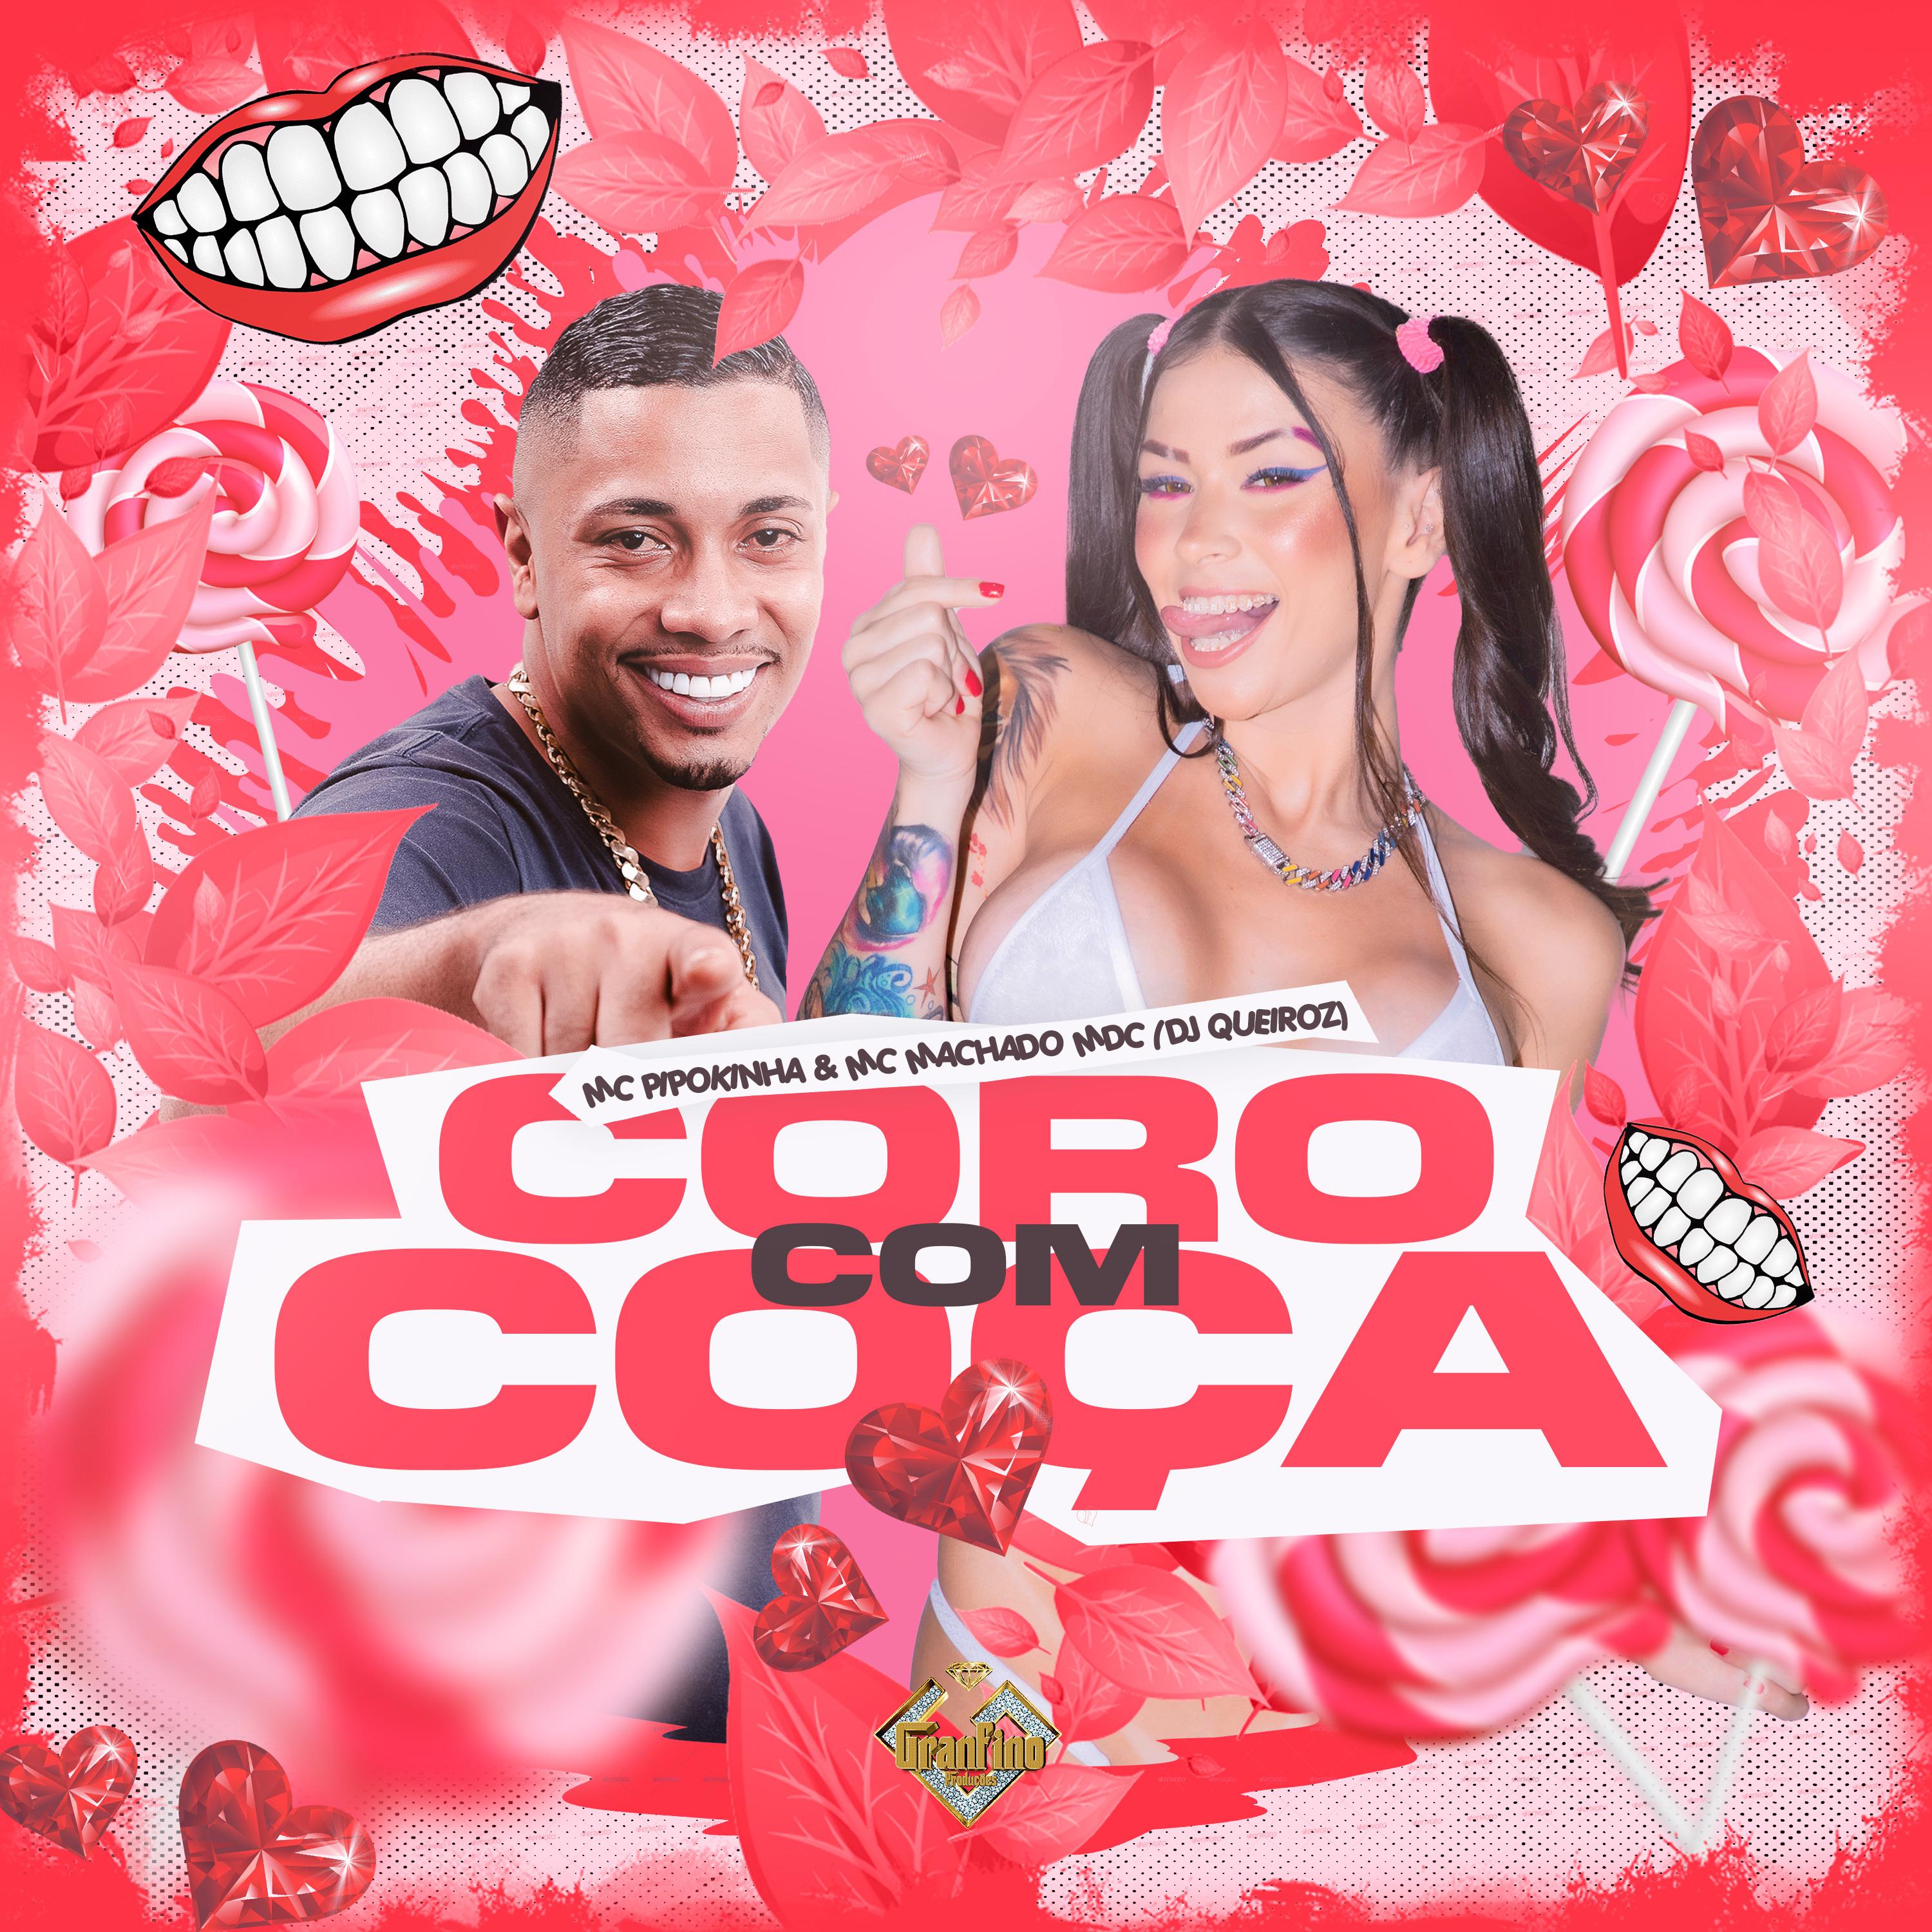 MC Pipokinha - Coro Com Coça